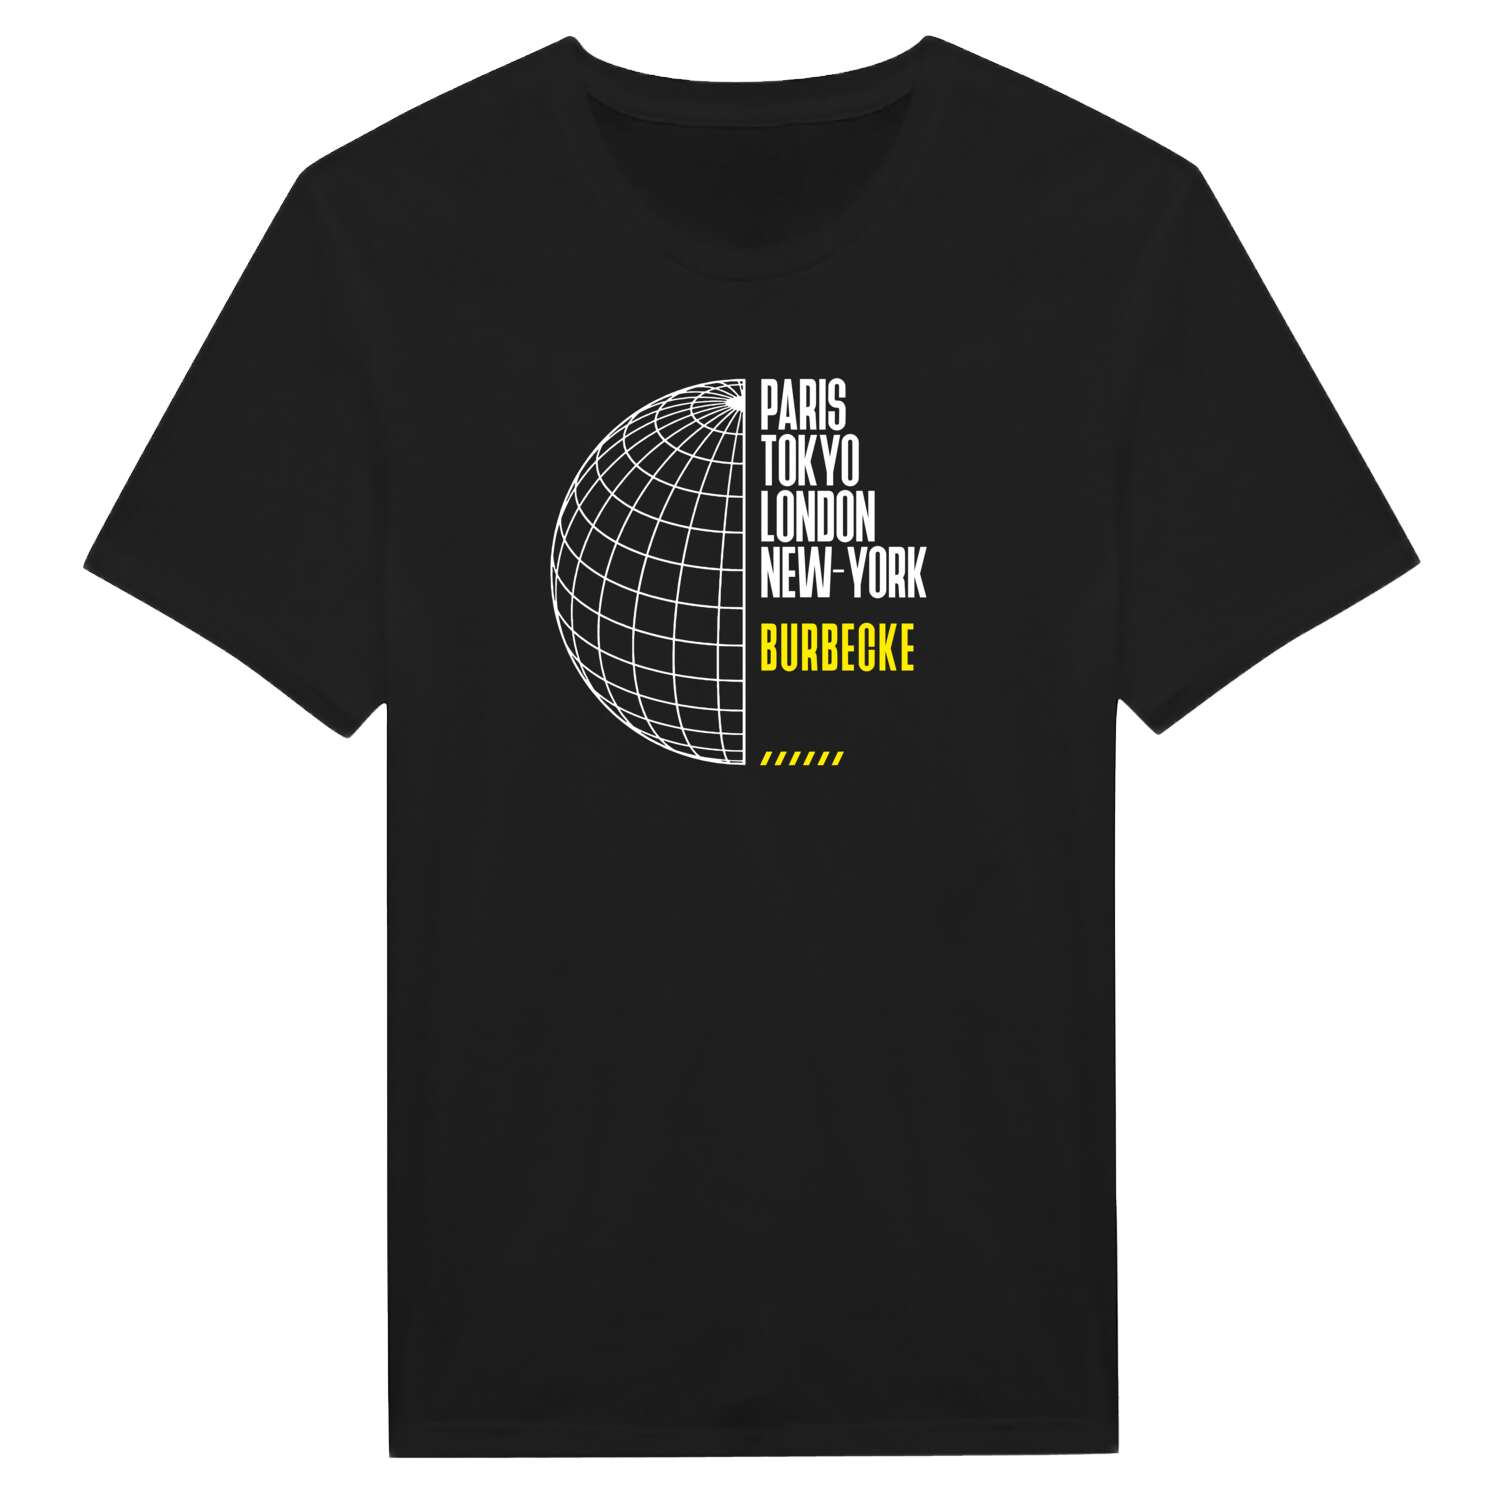 Burbecke T-Shirt »Paris Tokyo London«